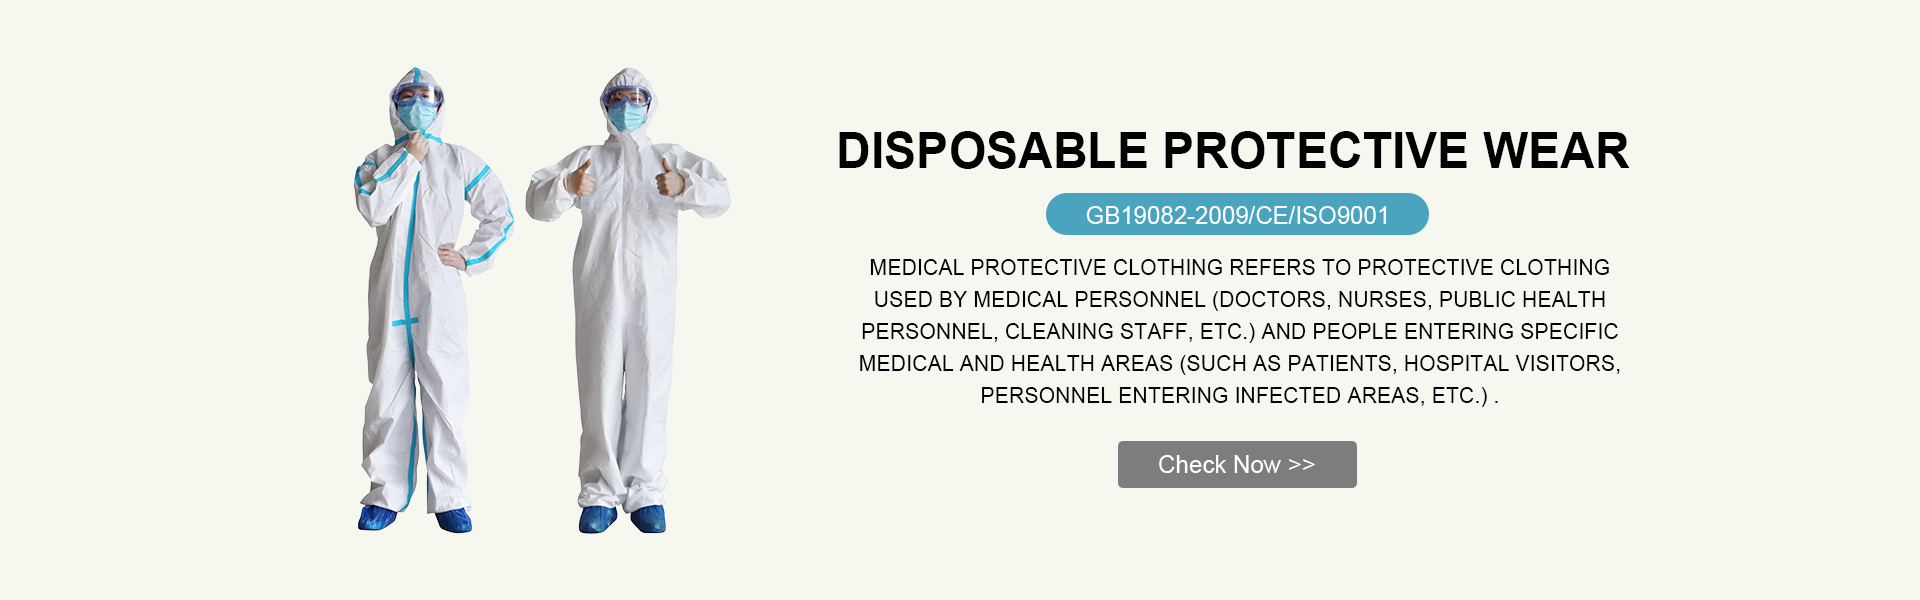 cerrahi önlük Tek kullanımlık koruyucu giyim Ozon jeneratörleri Tıbbi vantilatörler Tek kullanımlık izolasyon önlük izolasyon elbisesi tıbbi izolasyon elbisesi